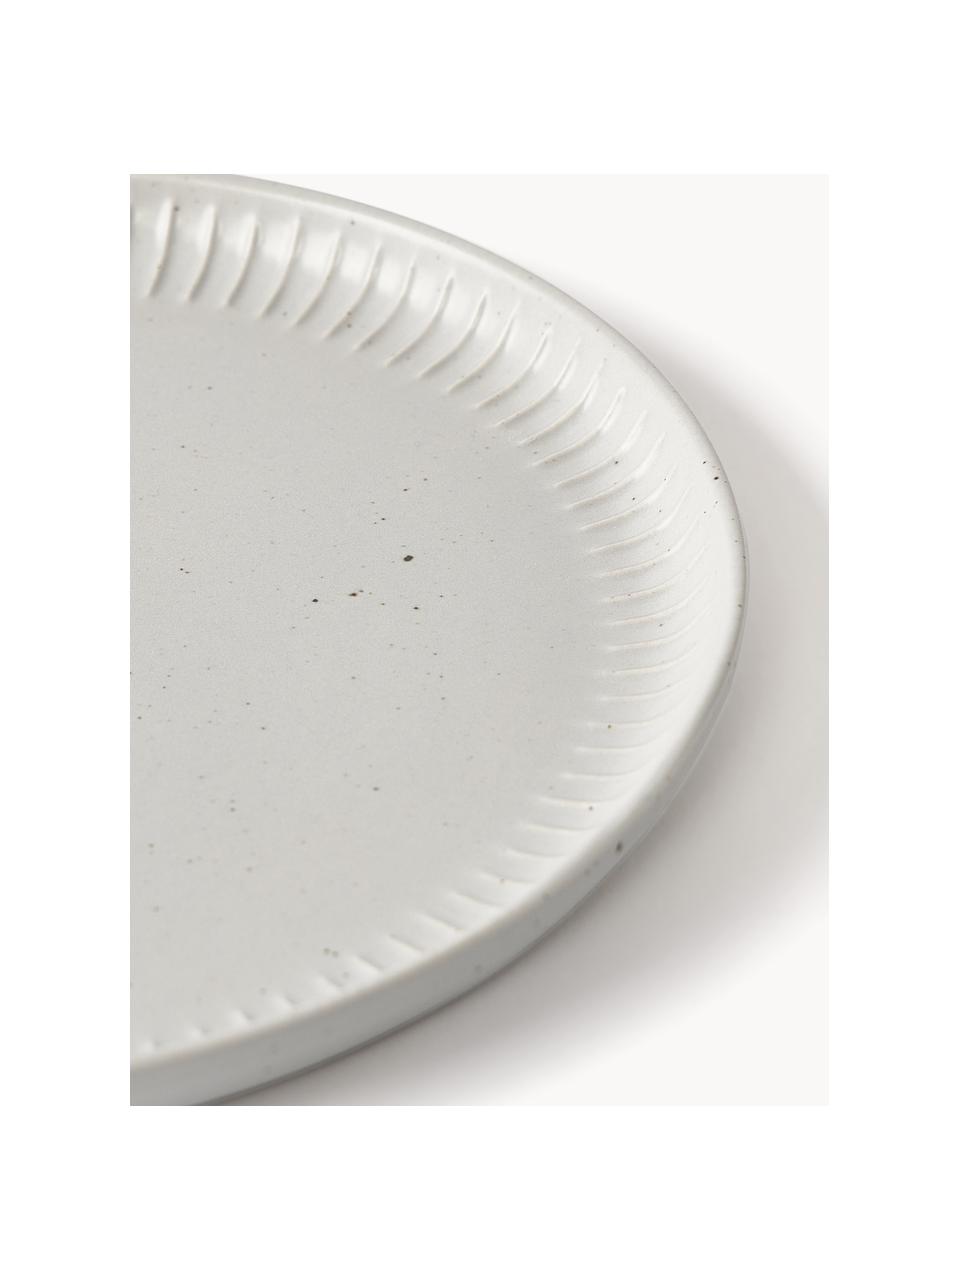 Piatto colazione maculato con rilievo Rhea 4 pz, Gres, Grigio chiaro, Ø 21 x Alt. 2 cm